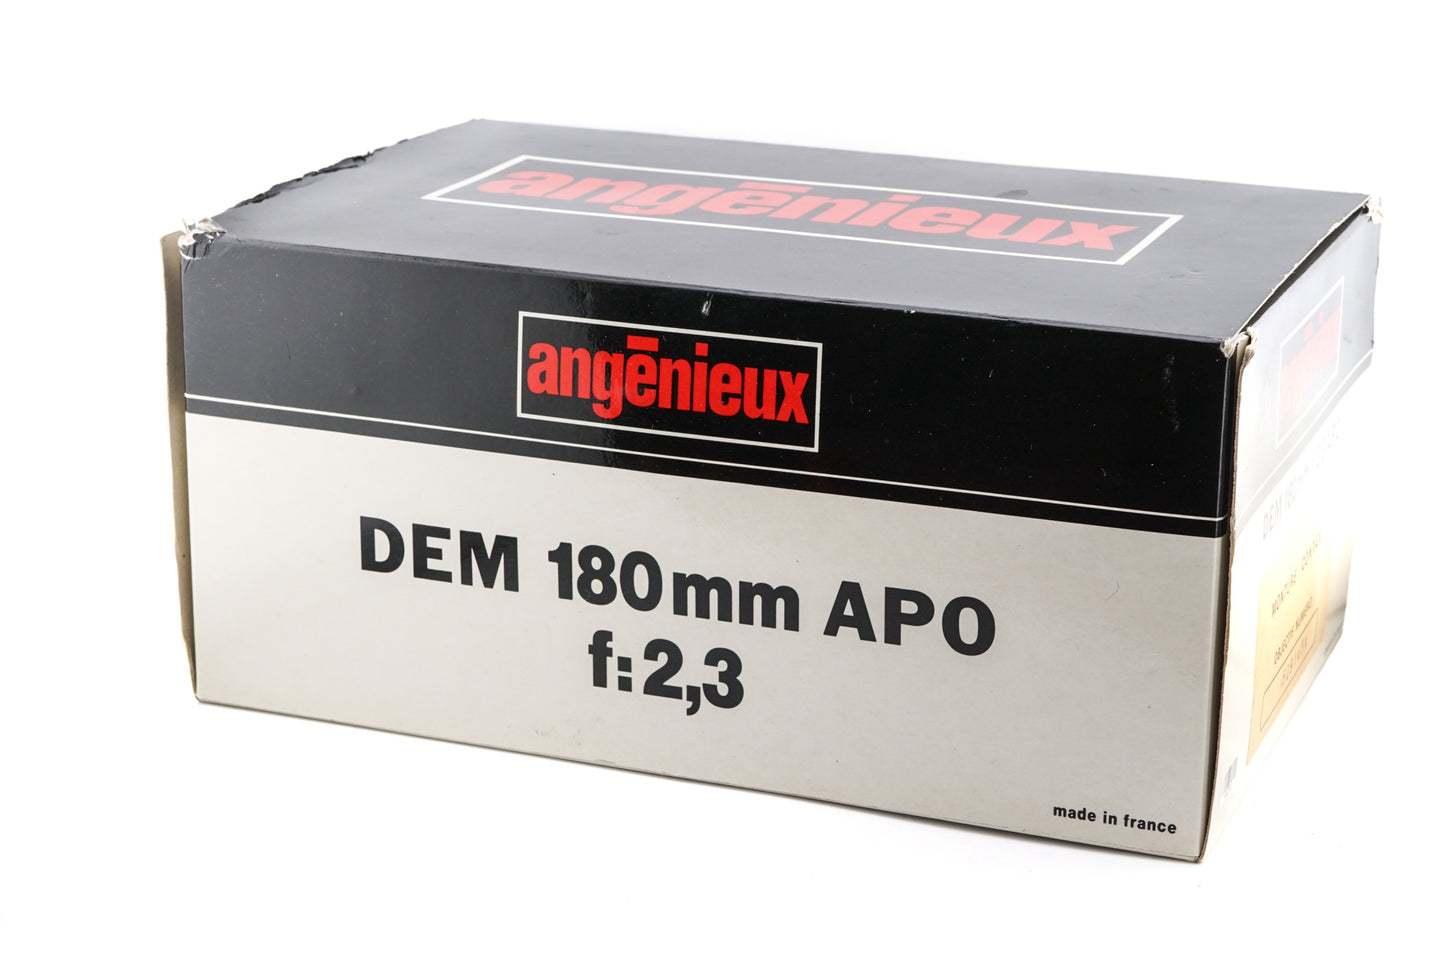 Angenieux 180mm f2.3 APO DEM